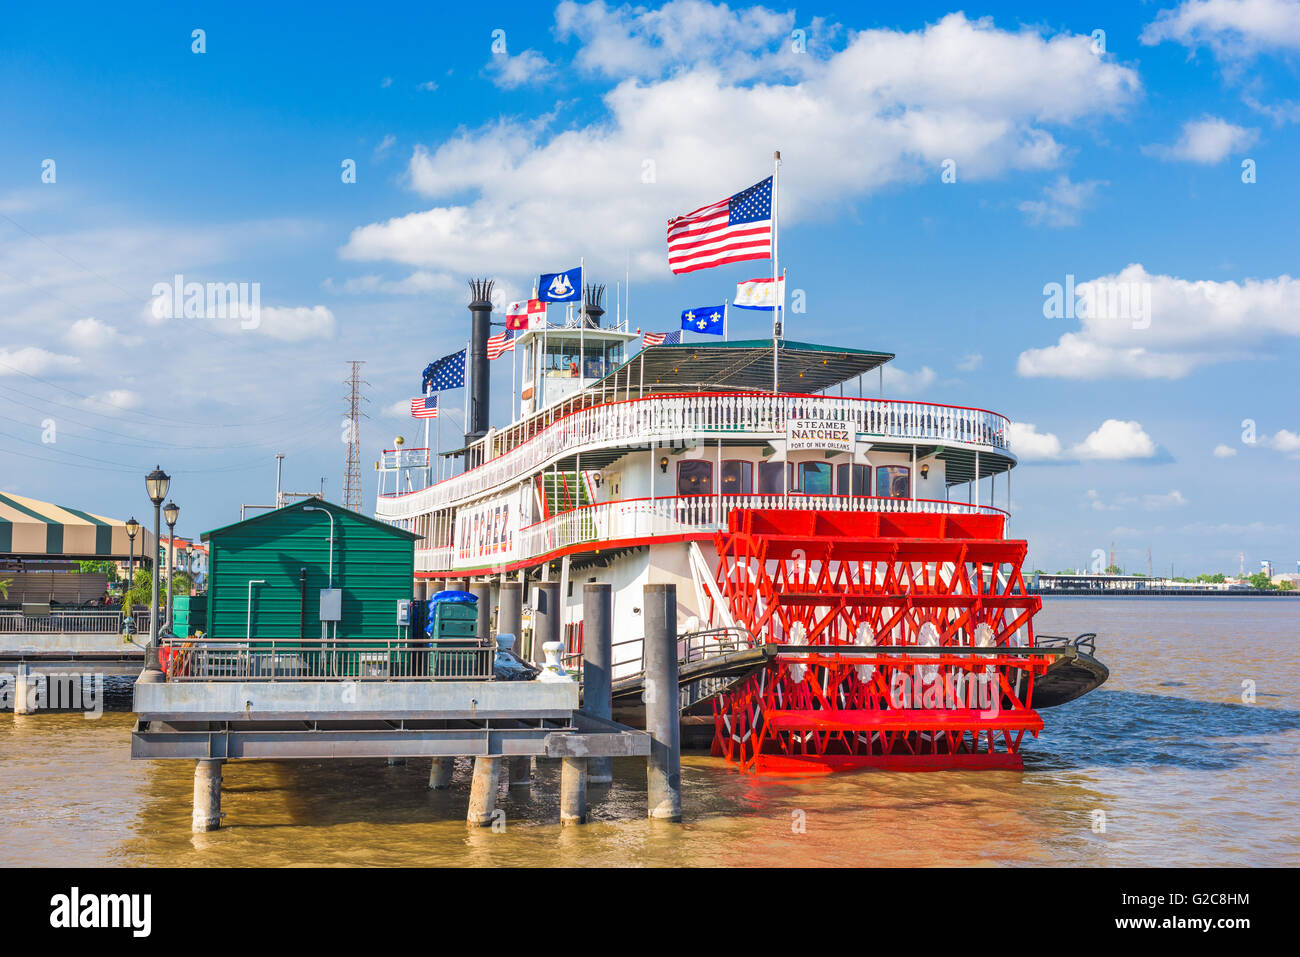 La Nouvelle-Orléans, Louisiane - 10 MAI 2016 : The steamboat Natchez sur le fleuve Mississippi. Banque D'Images